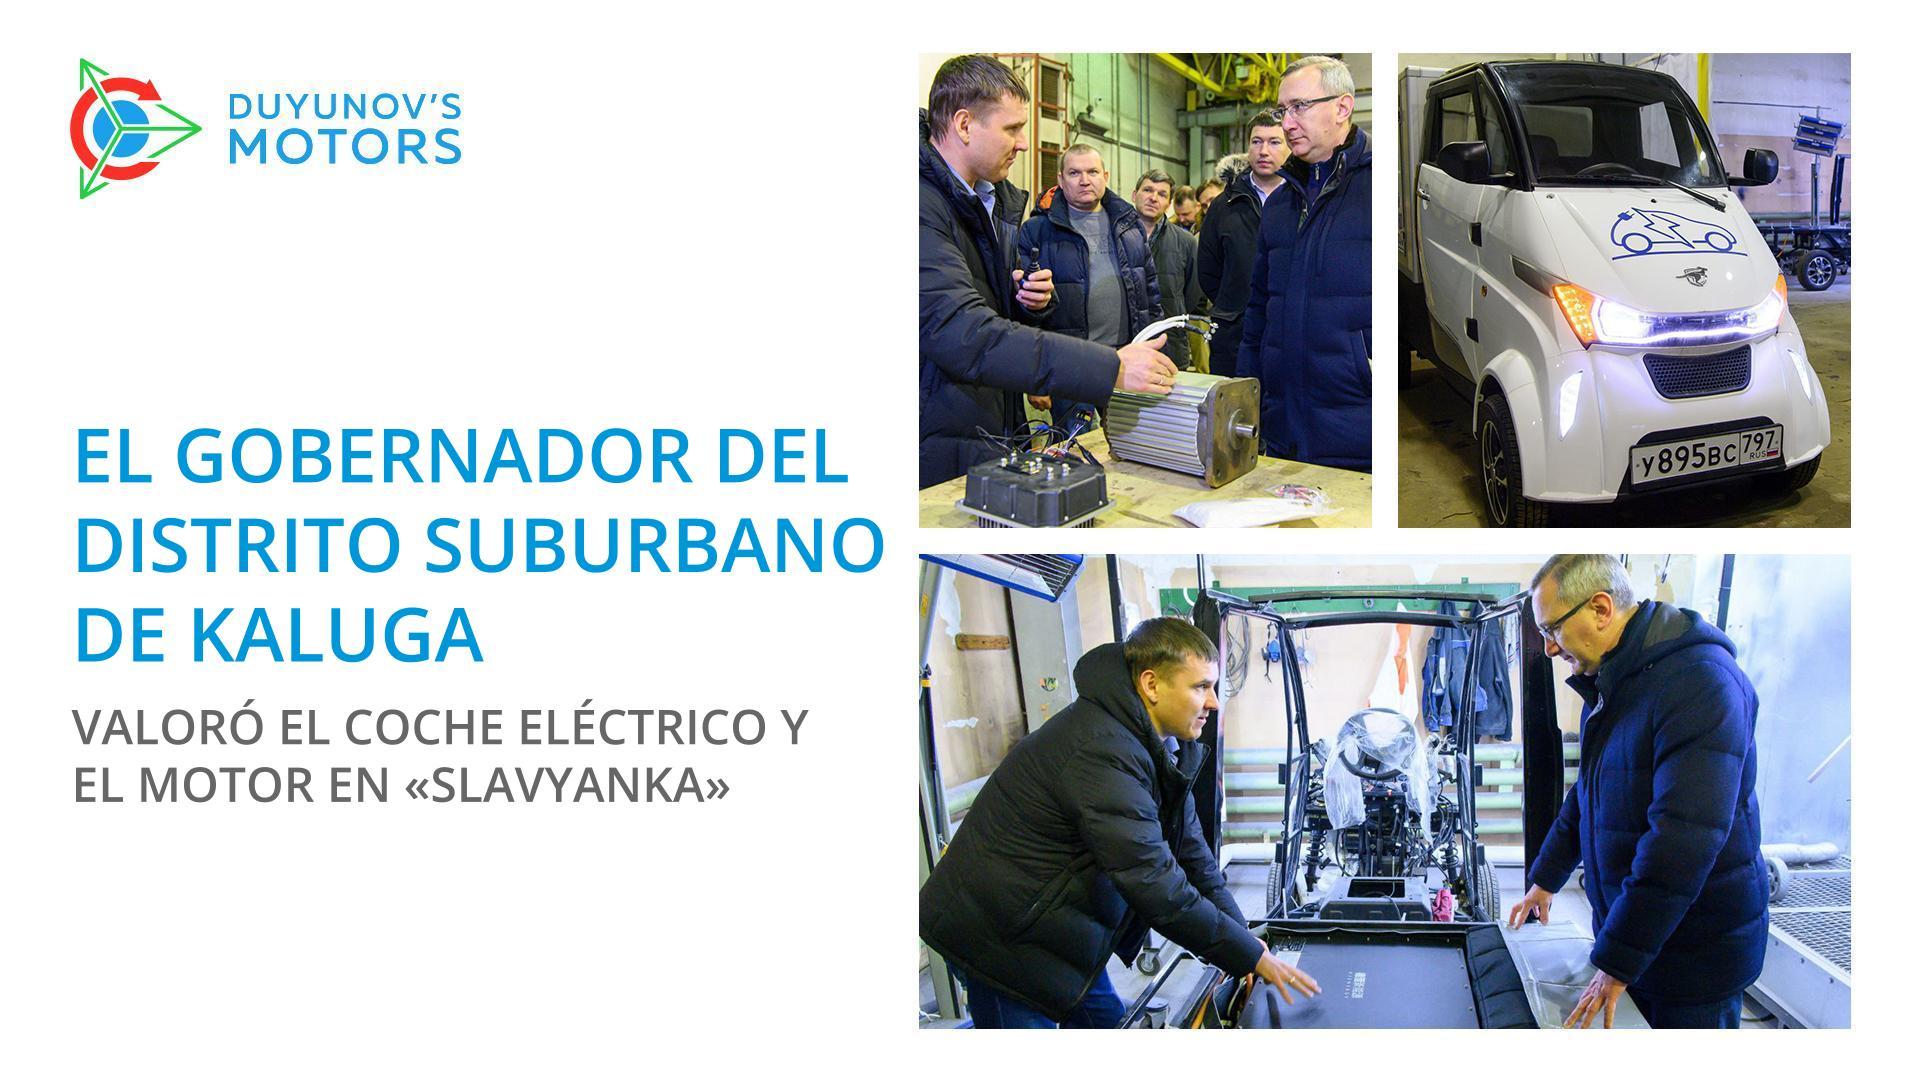 El gobernador del distrito suburbano de Kaluga valoró el coche eléctrico y el motor en "Slavyanka"